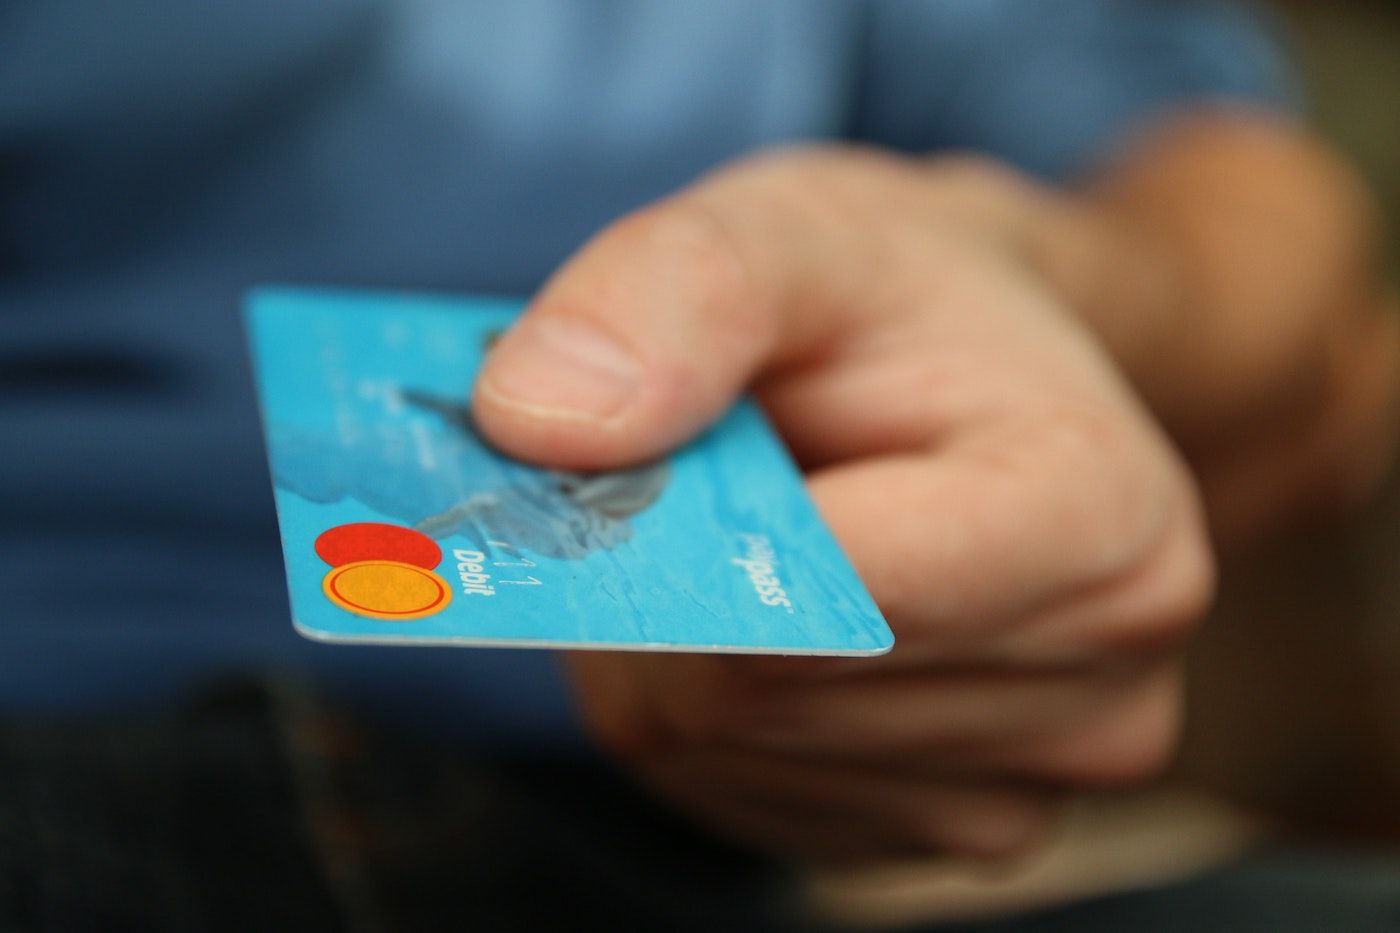 Tangan memegang kartu kredit untuk melakukan pembayaran